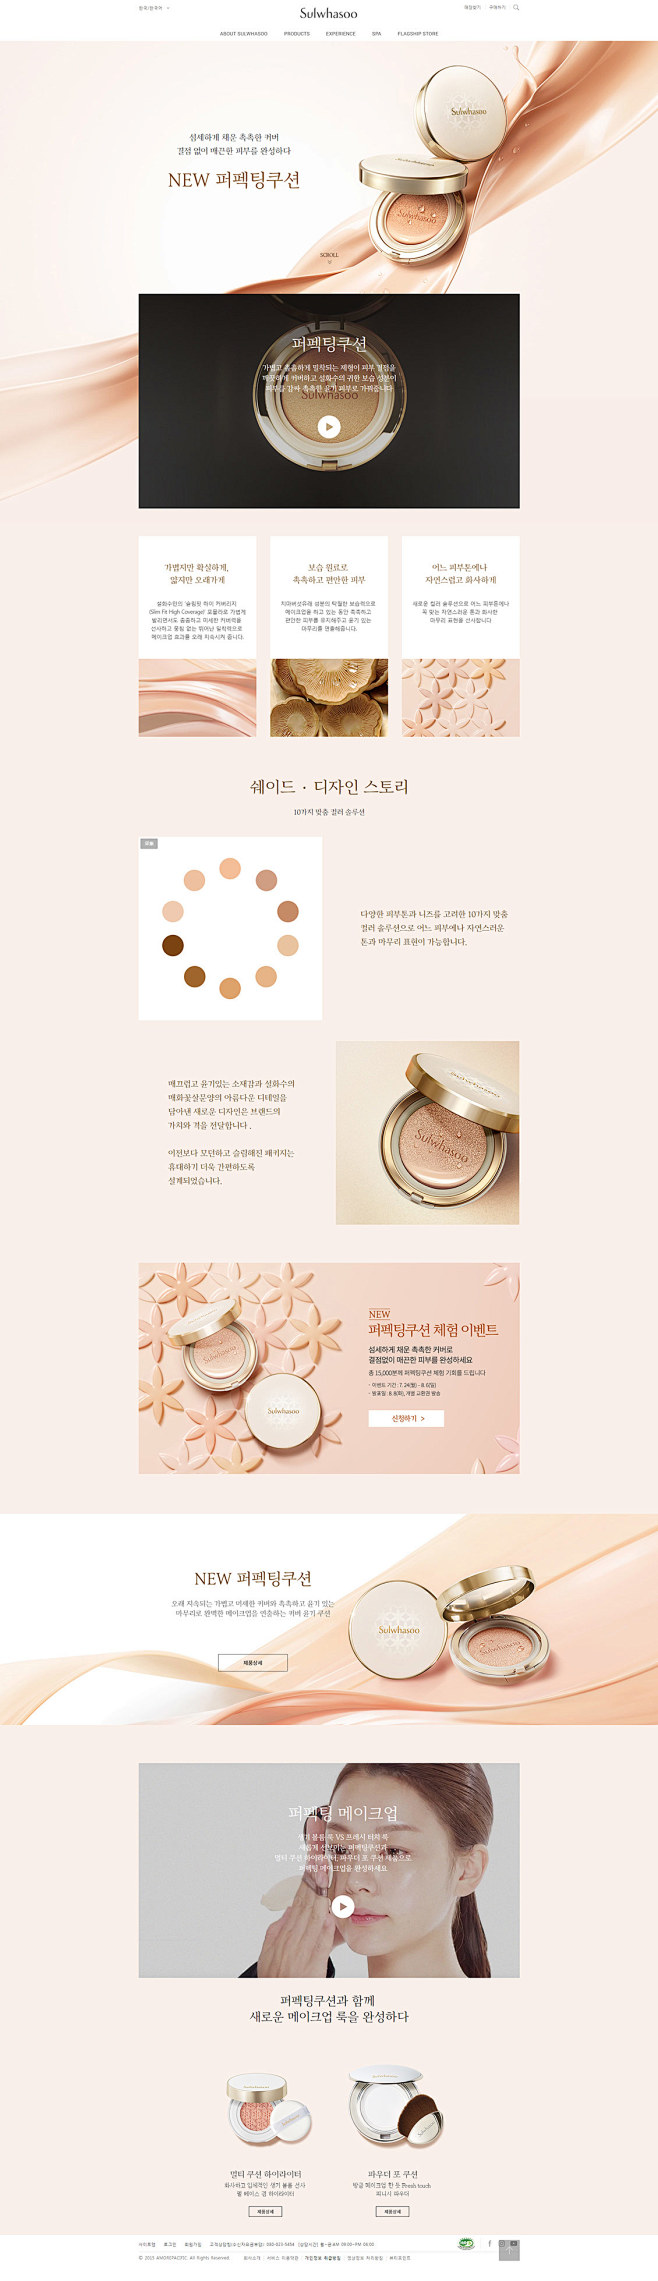 sulwhasoo韩国化妆品专题页面设计